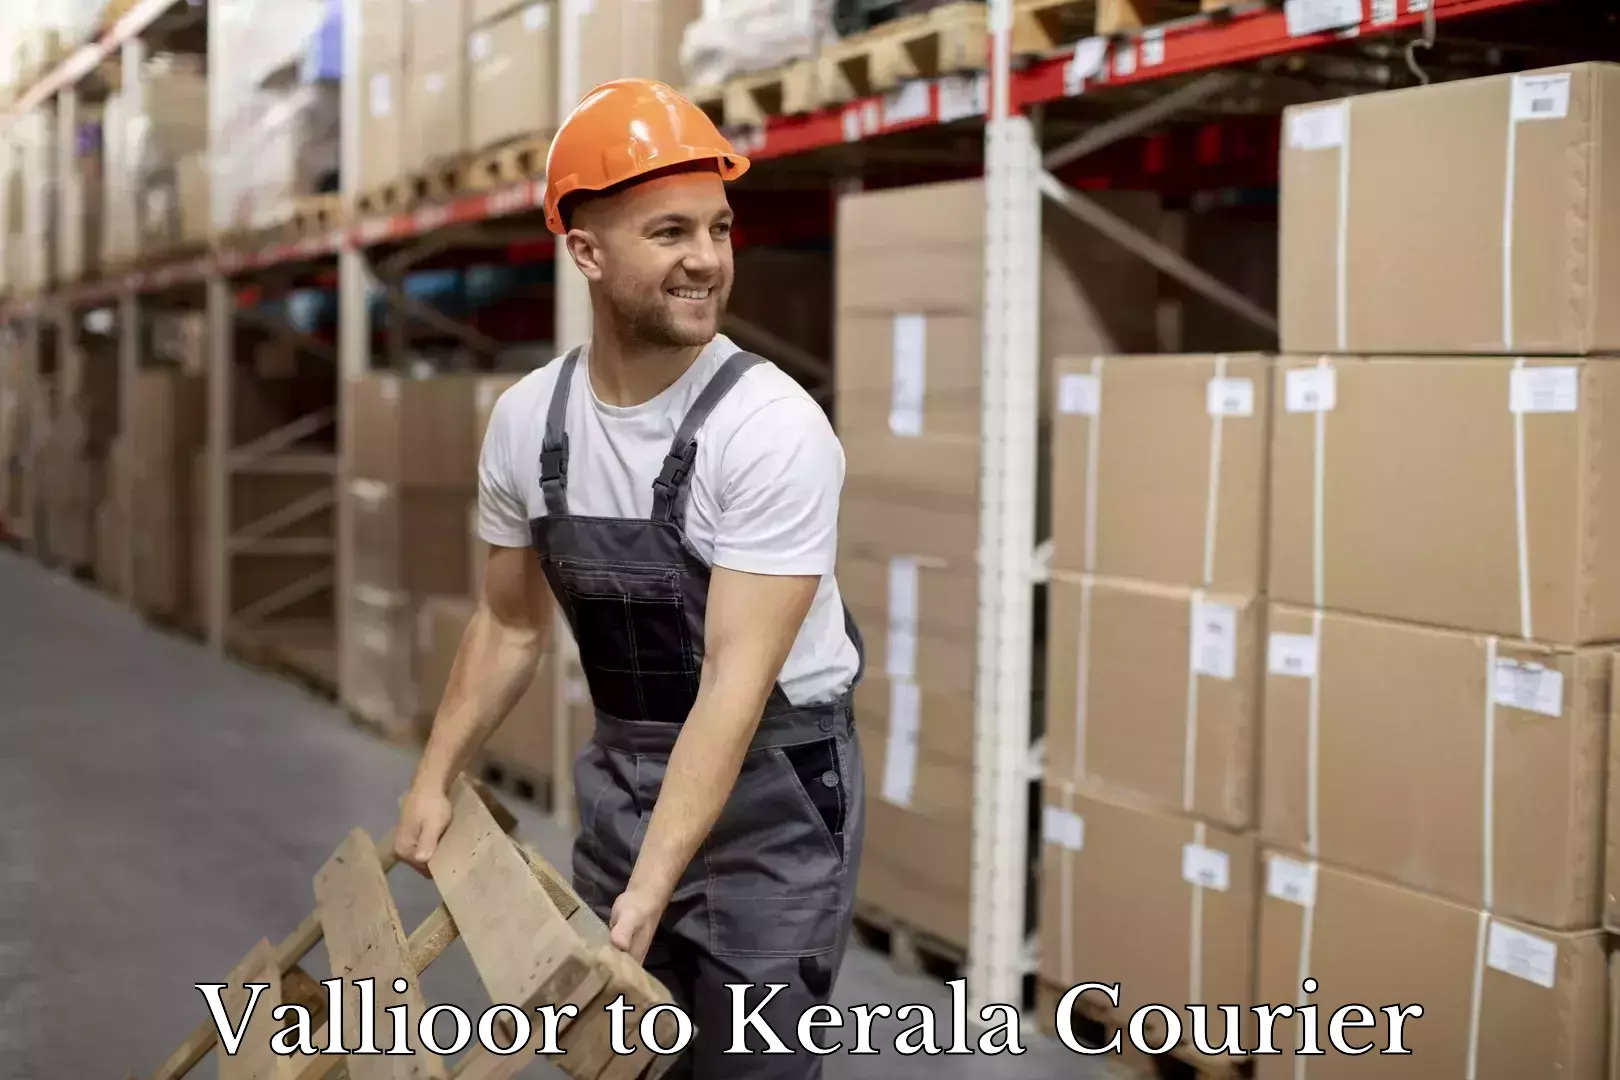 Urgent courier needs Vallioor to Kerala